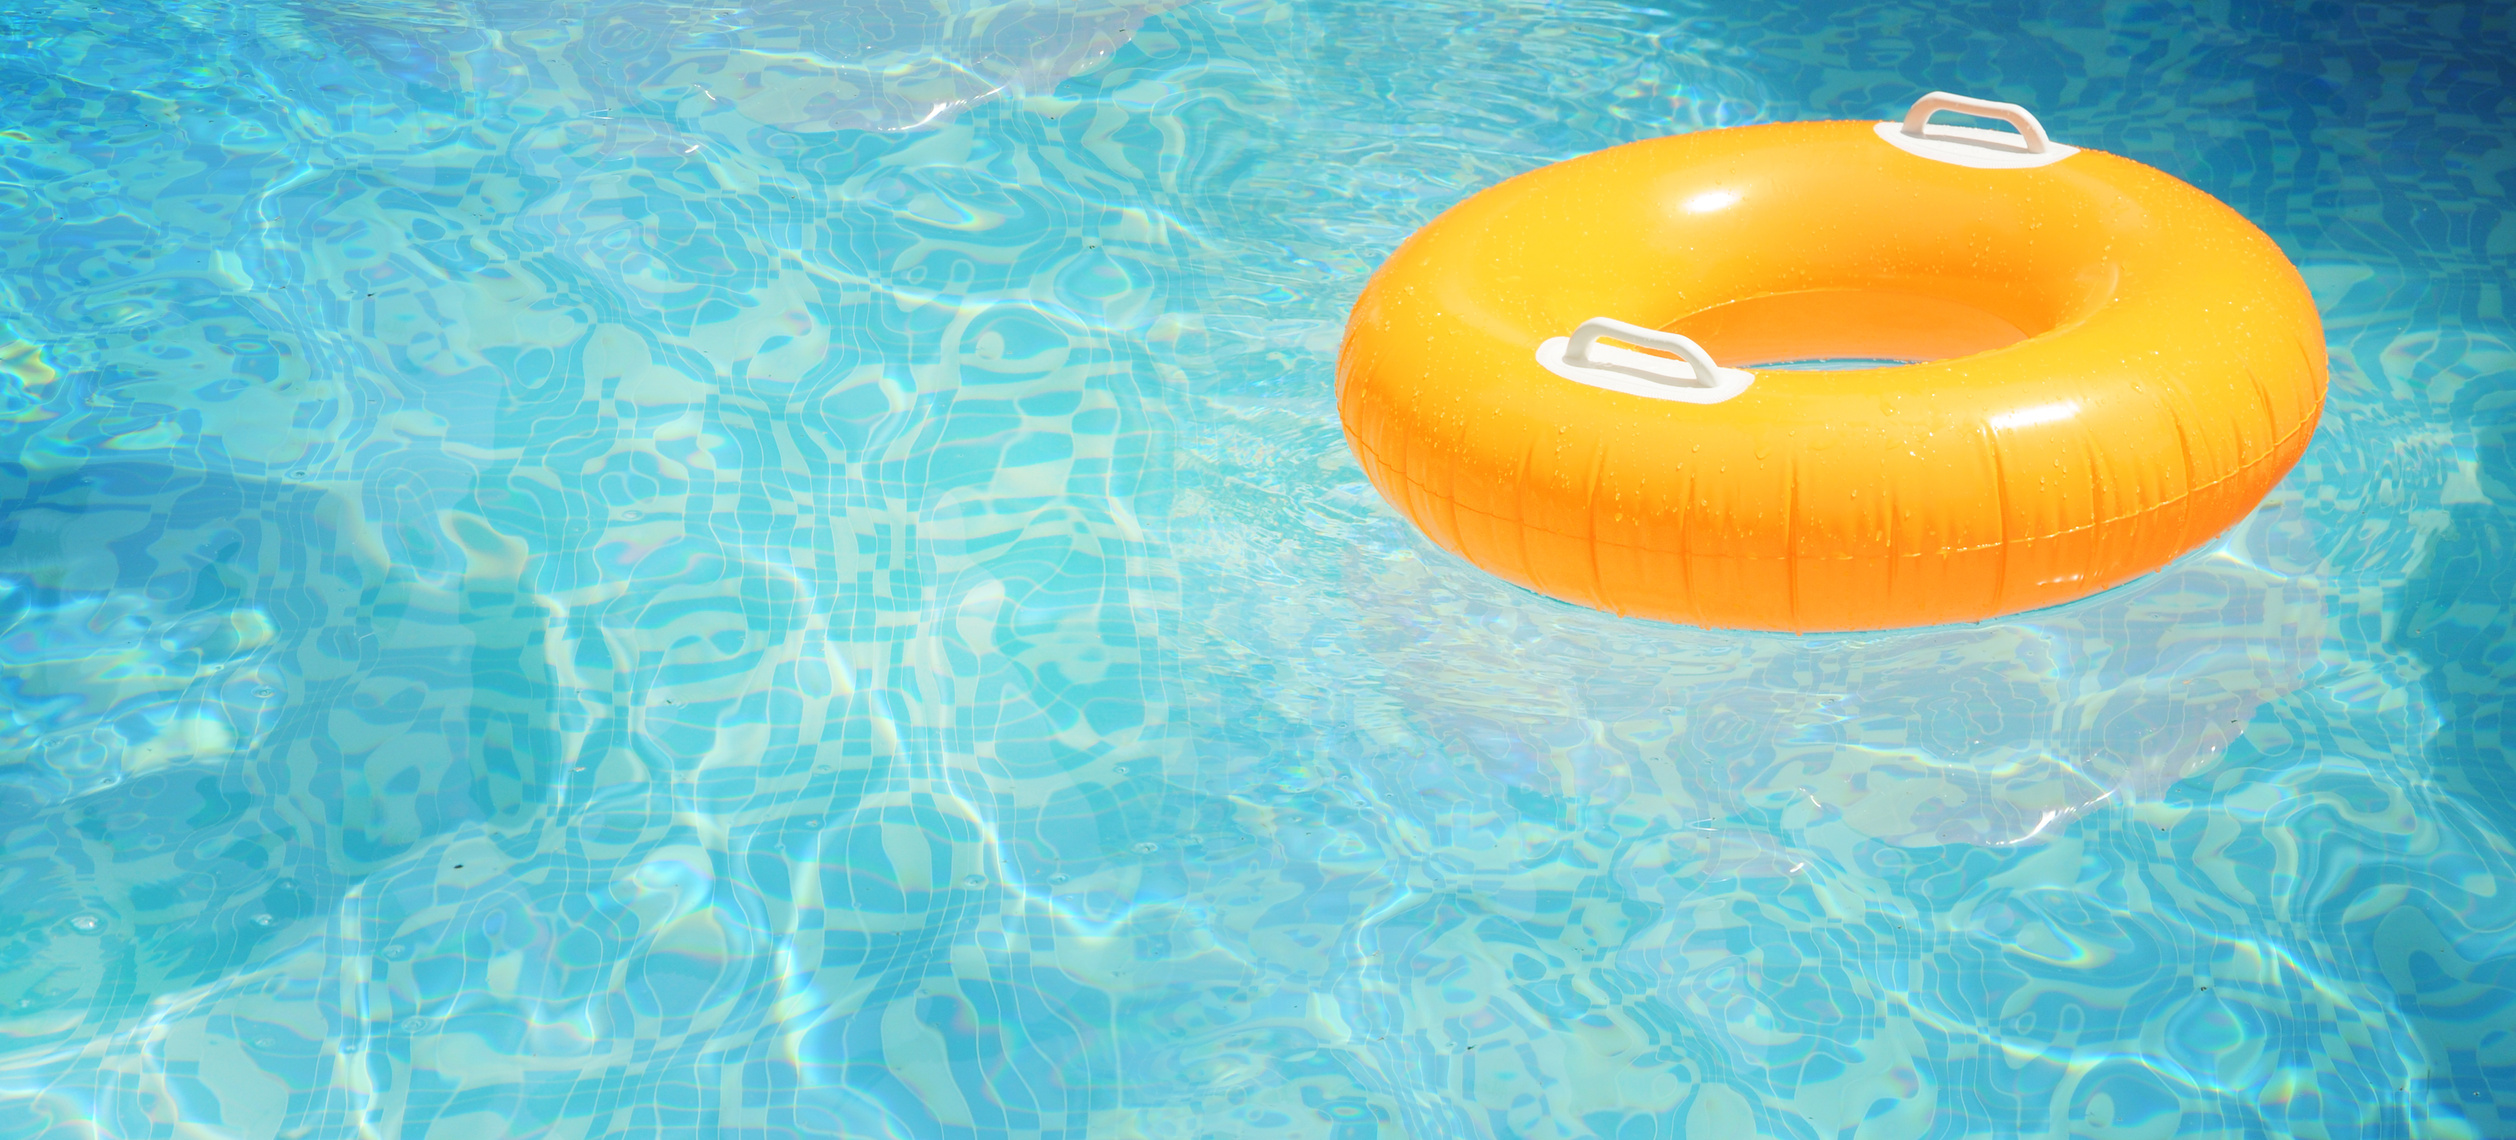 Summer water pool